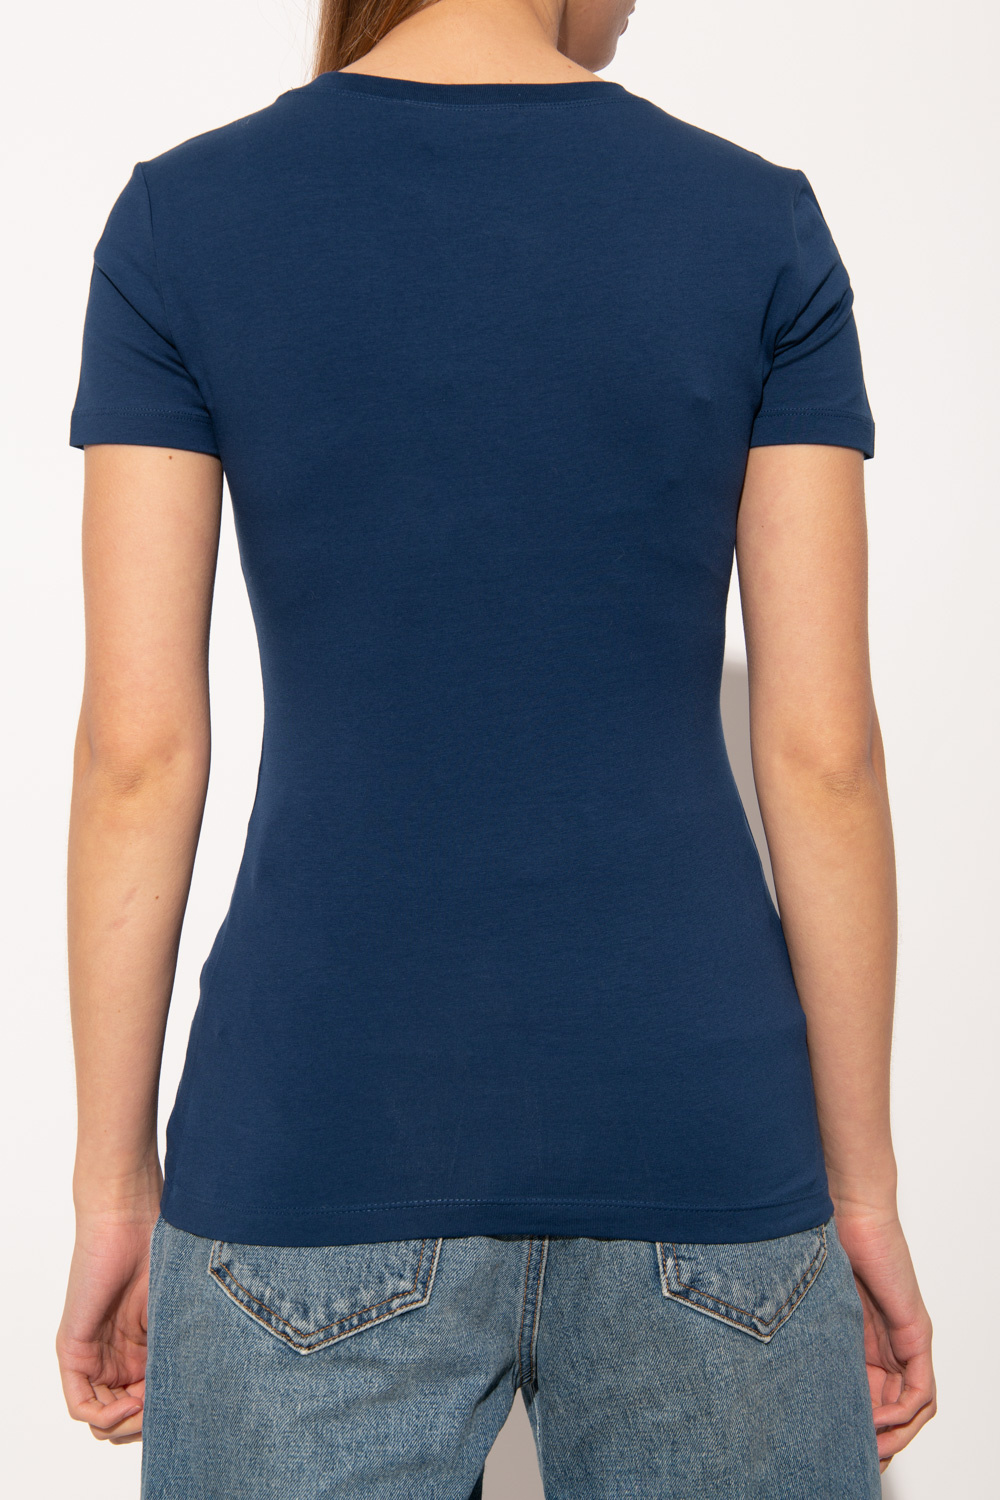 Love Moschino T-shirt adidas Runner azul marinho